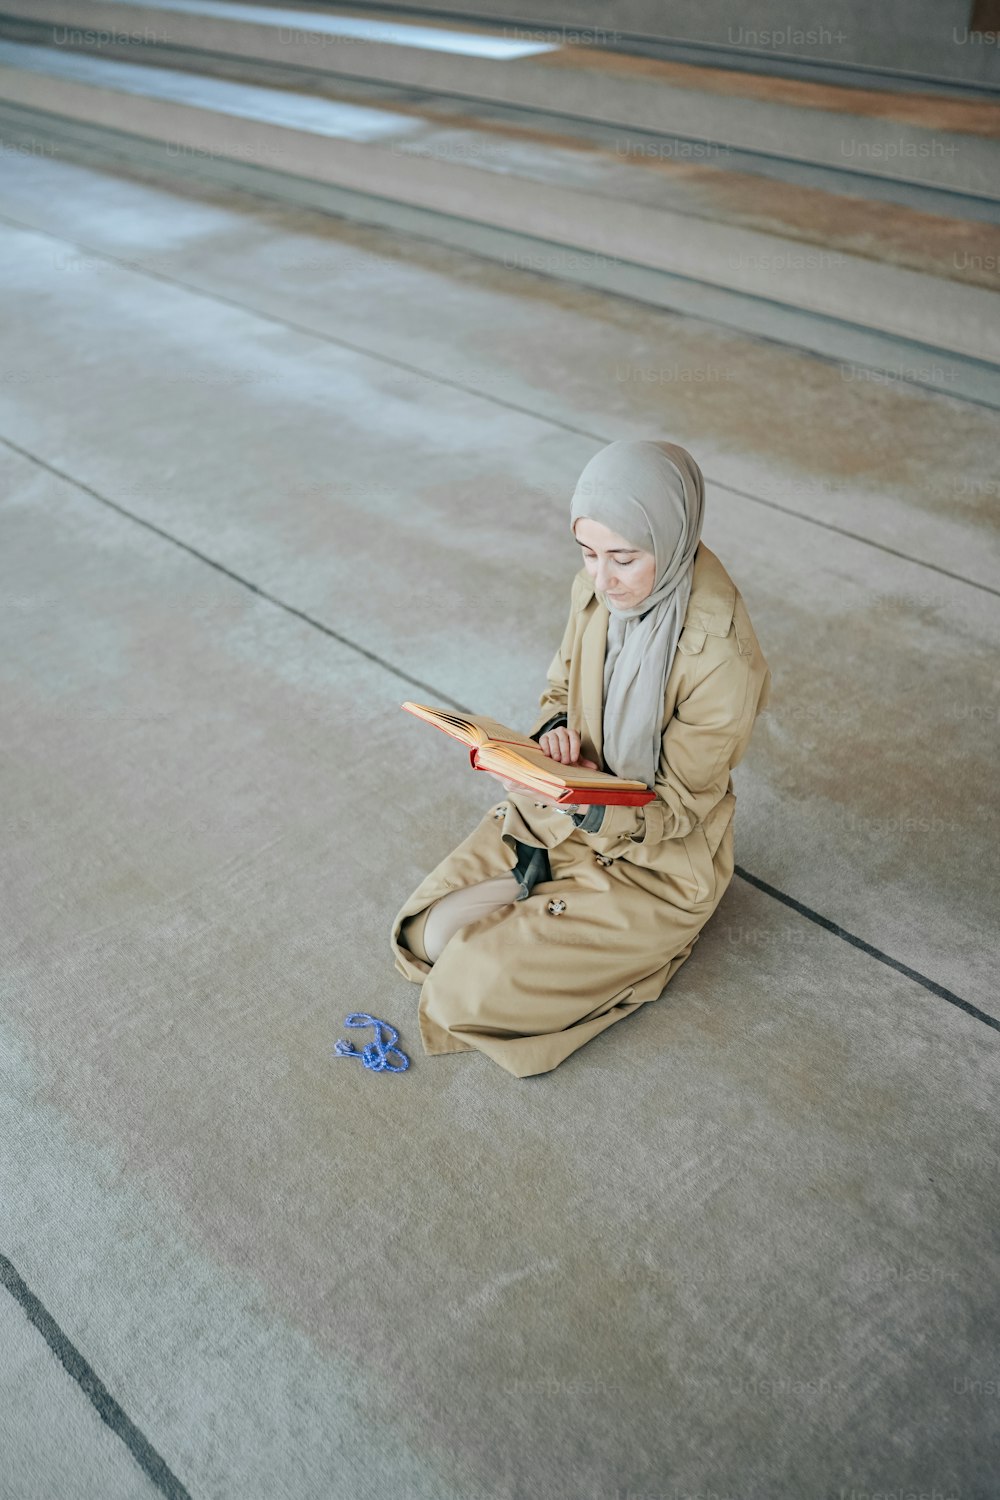 Una mujer sentada en el suelo leyendo un libro